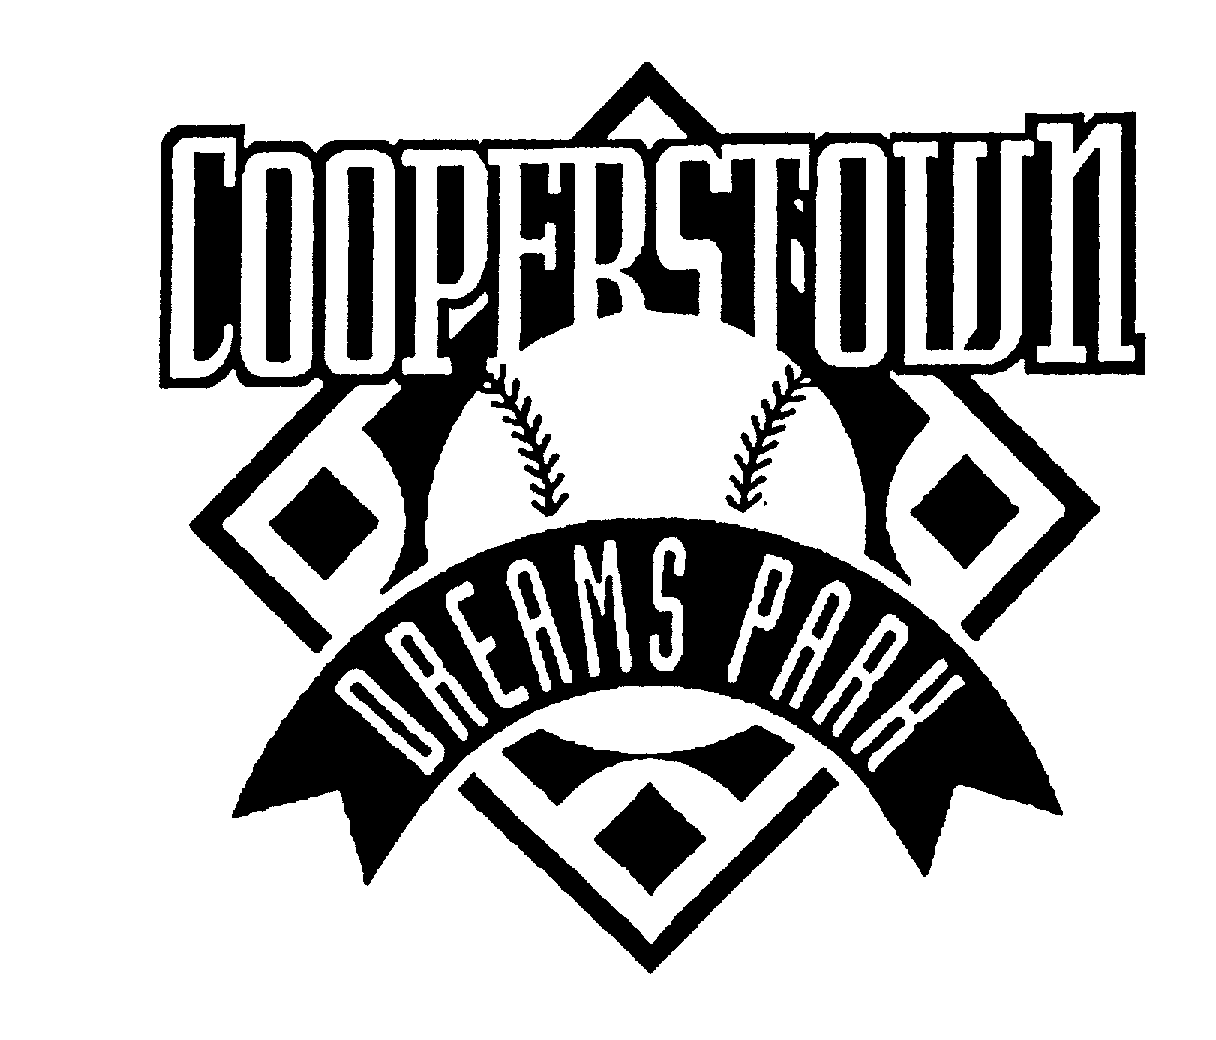 COOPERSTOWN DREAMS PARK Cooperstown Properties, LLC Trademark